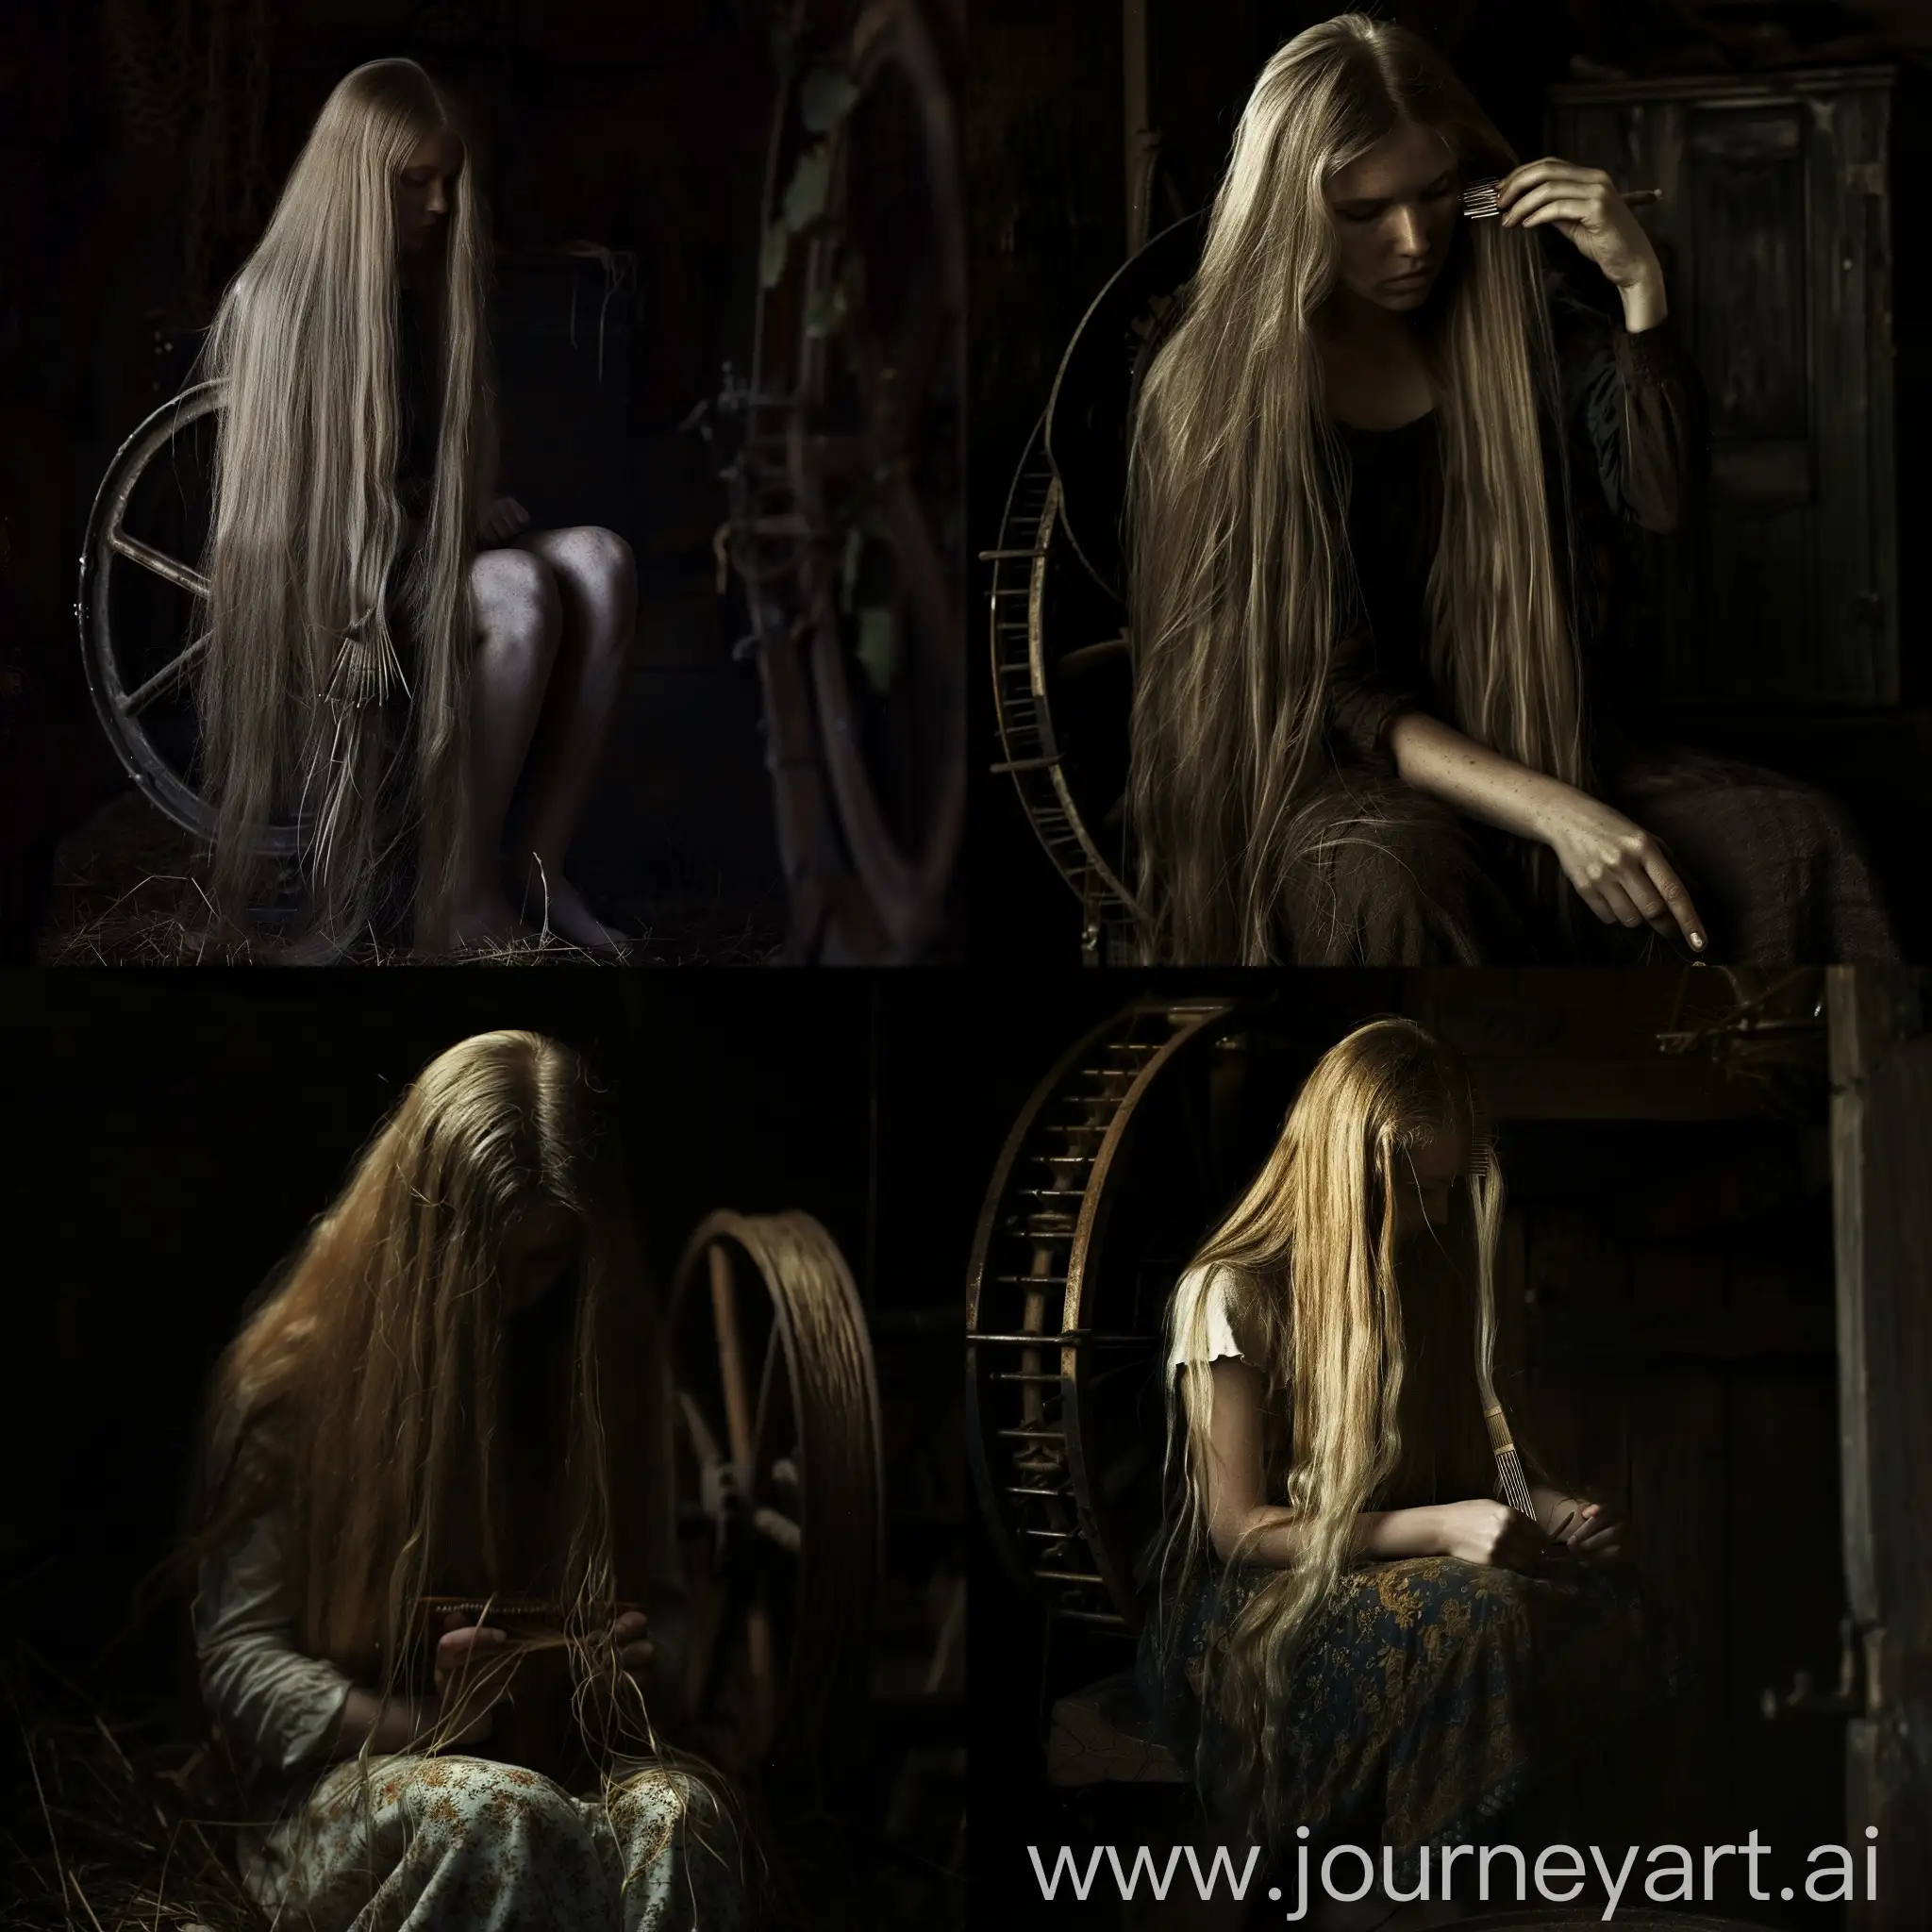 Девушка с длинными русыми волосами сидит в темноте и прядет свои волосы на старинной прялке.